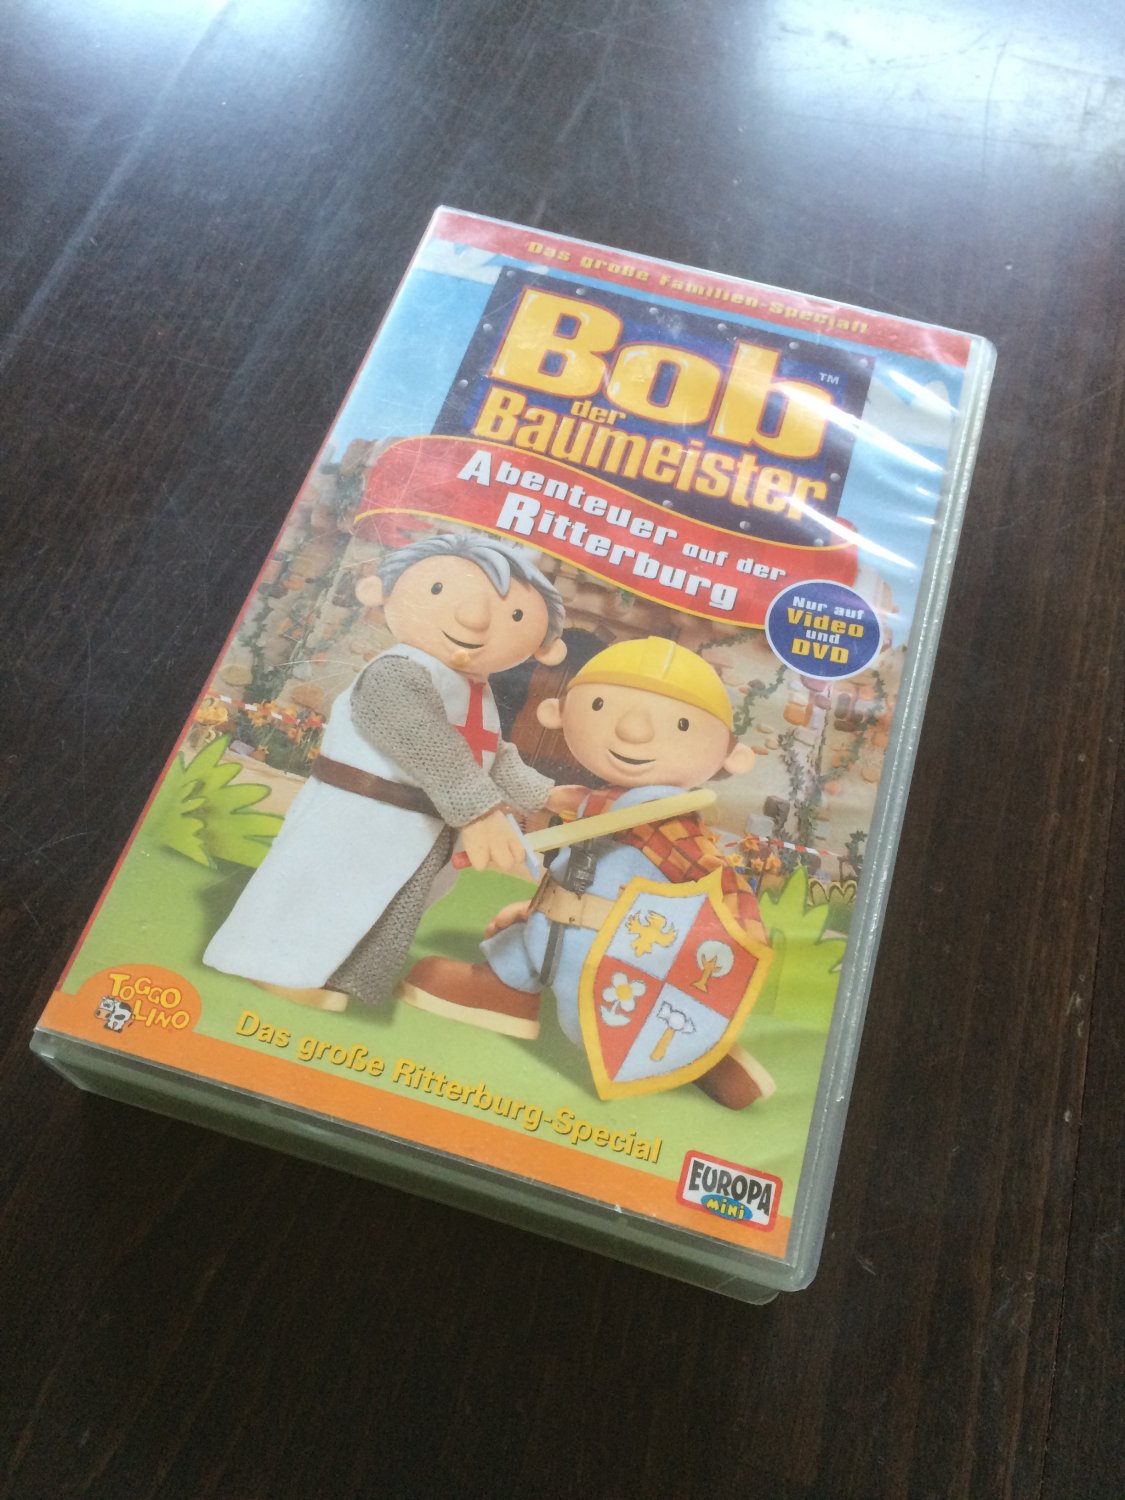 Bob der Baumeister 3 - Abenteuer ad Ritterburg